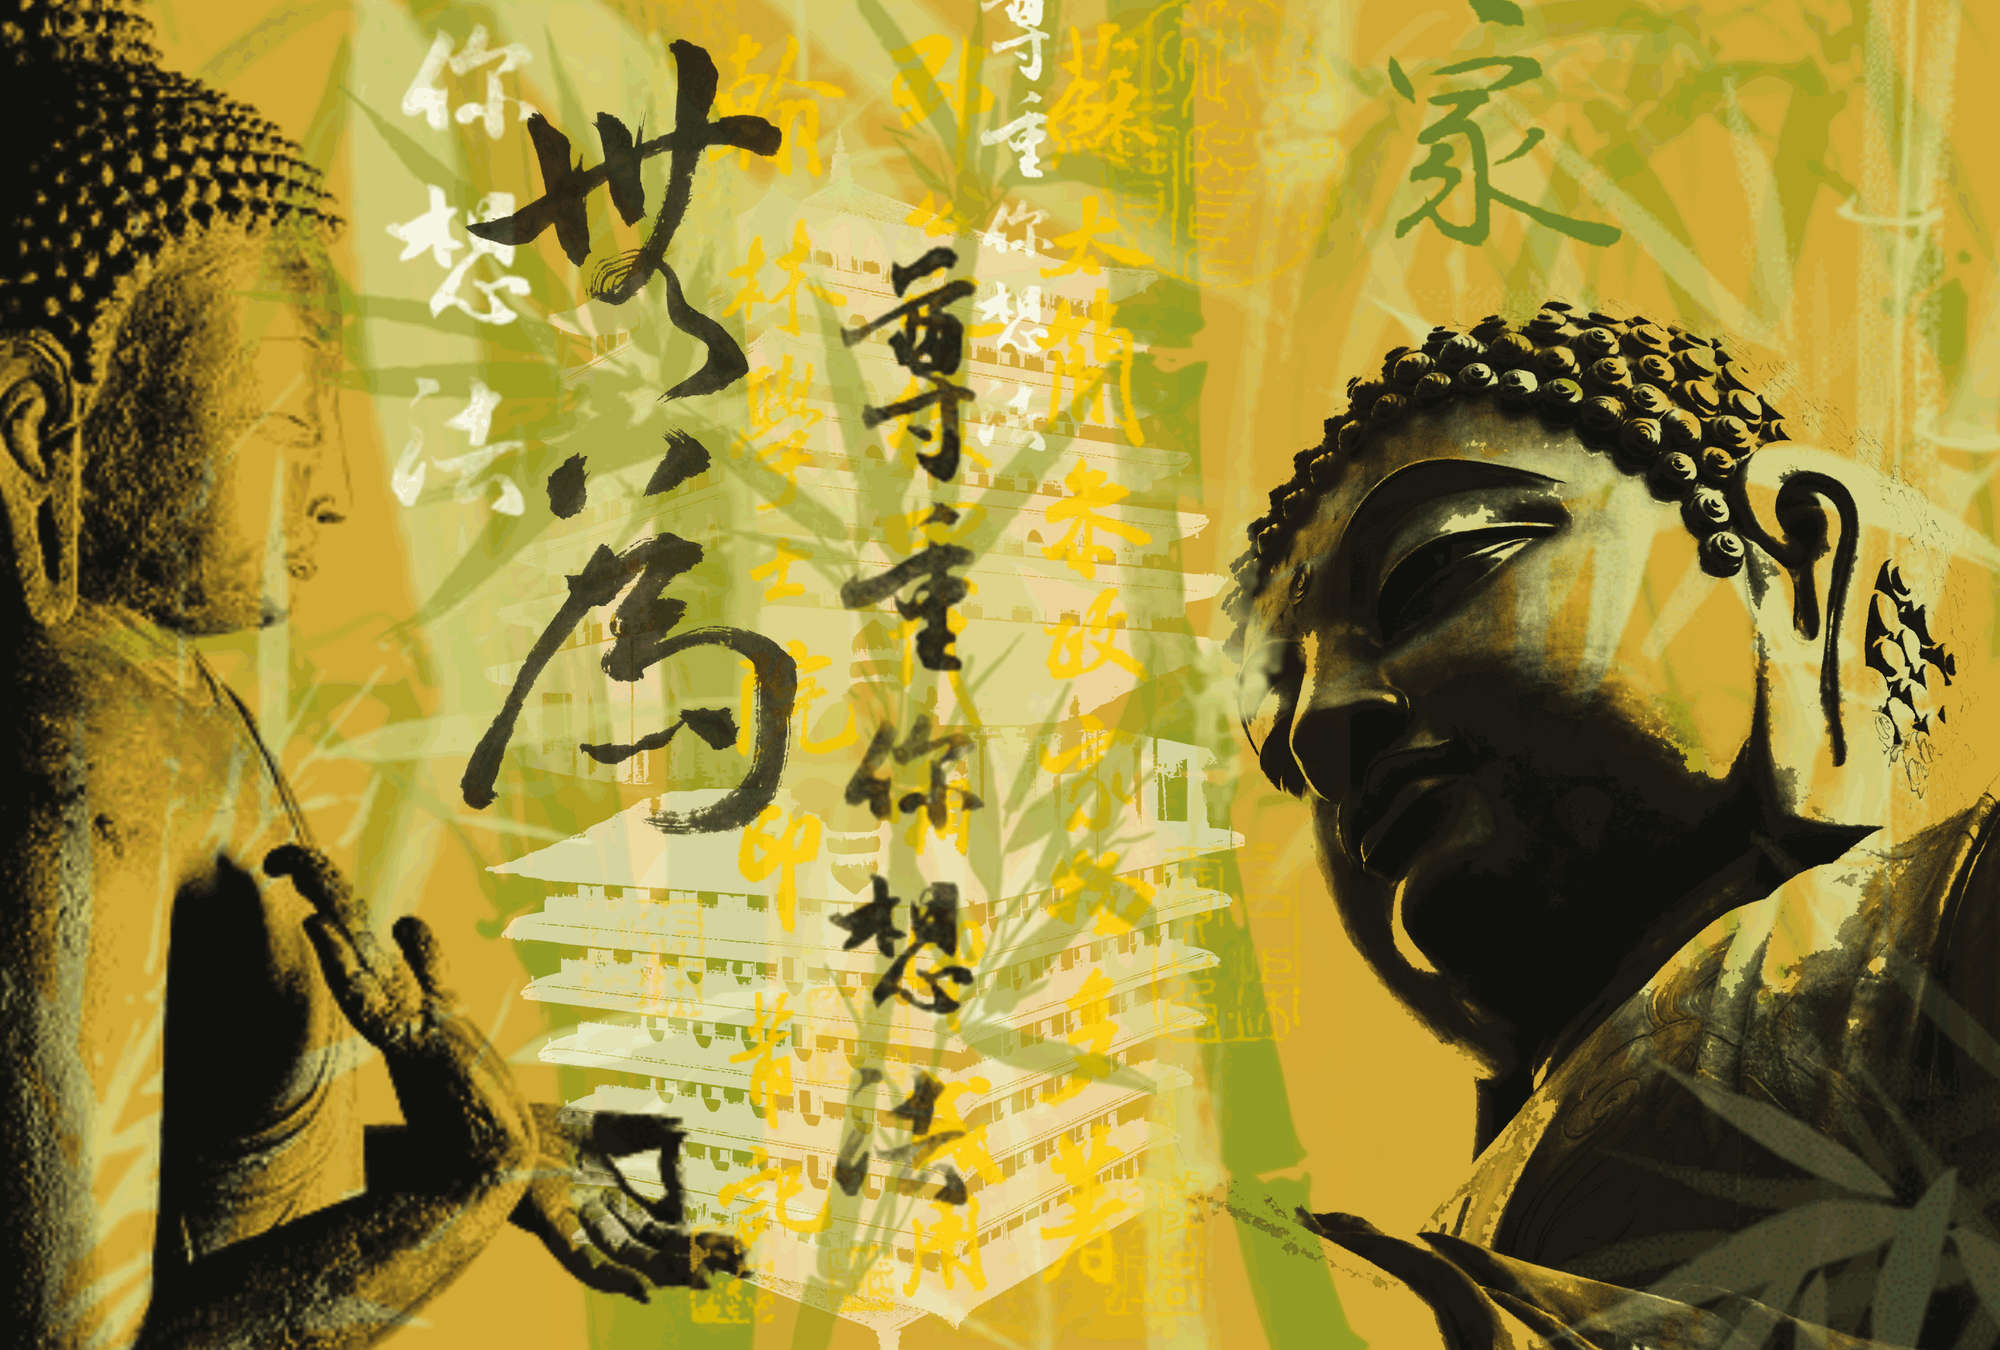             Boeddha muurschildering Aziatische Fusion Stijl
        